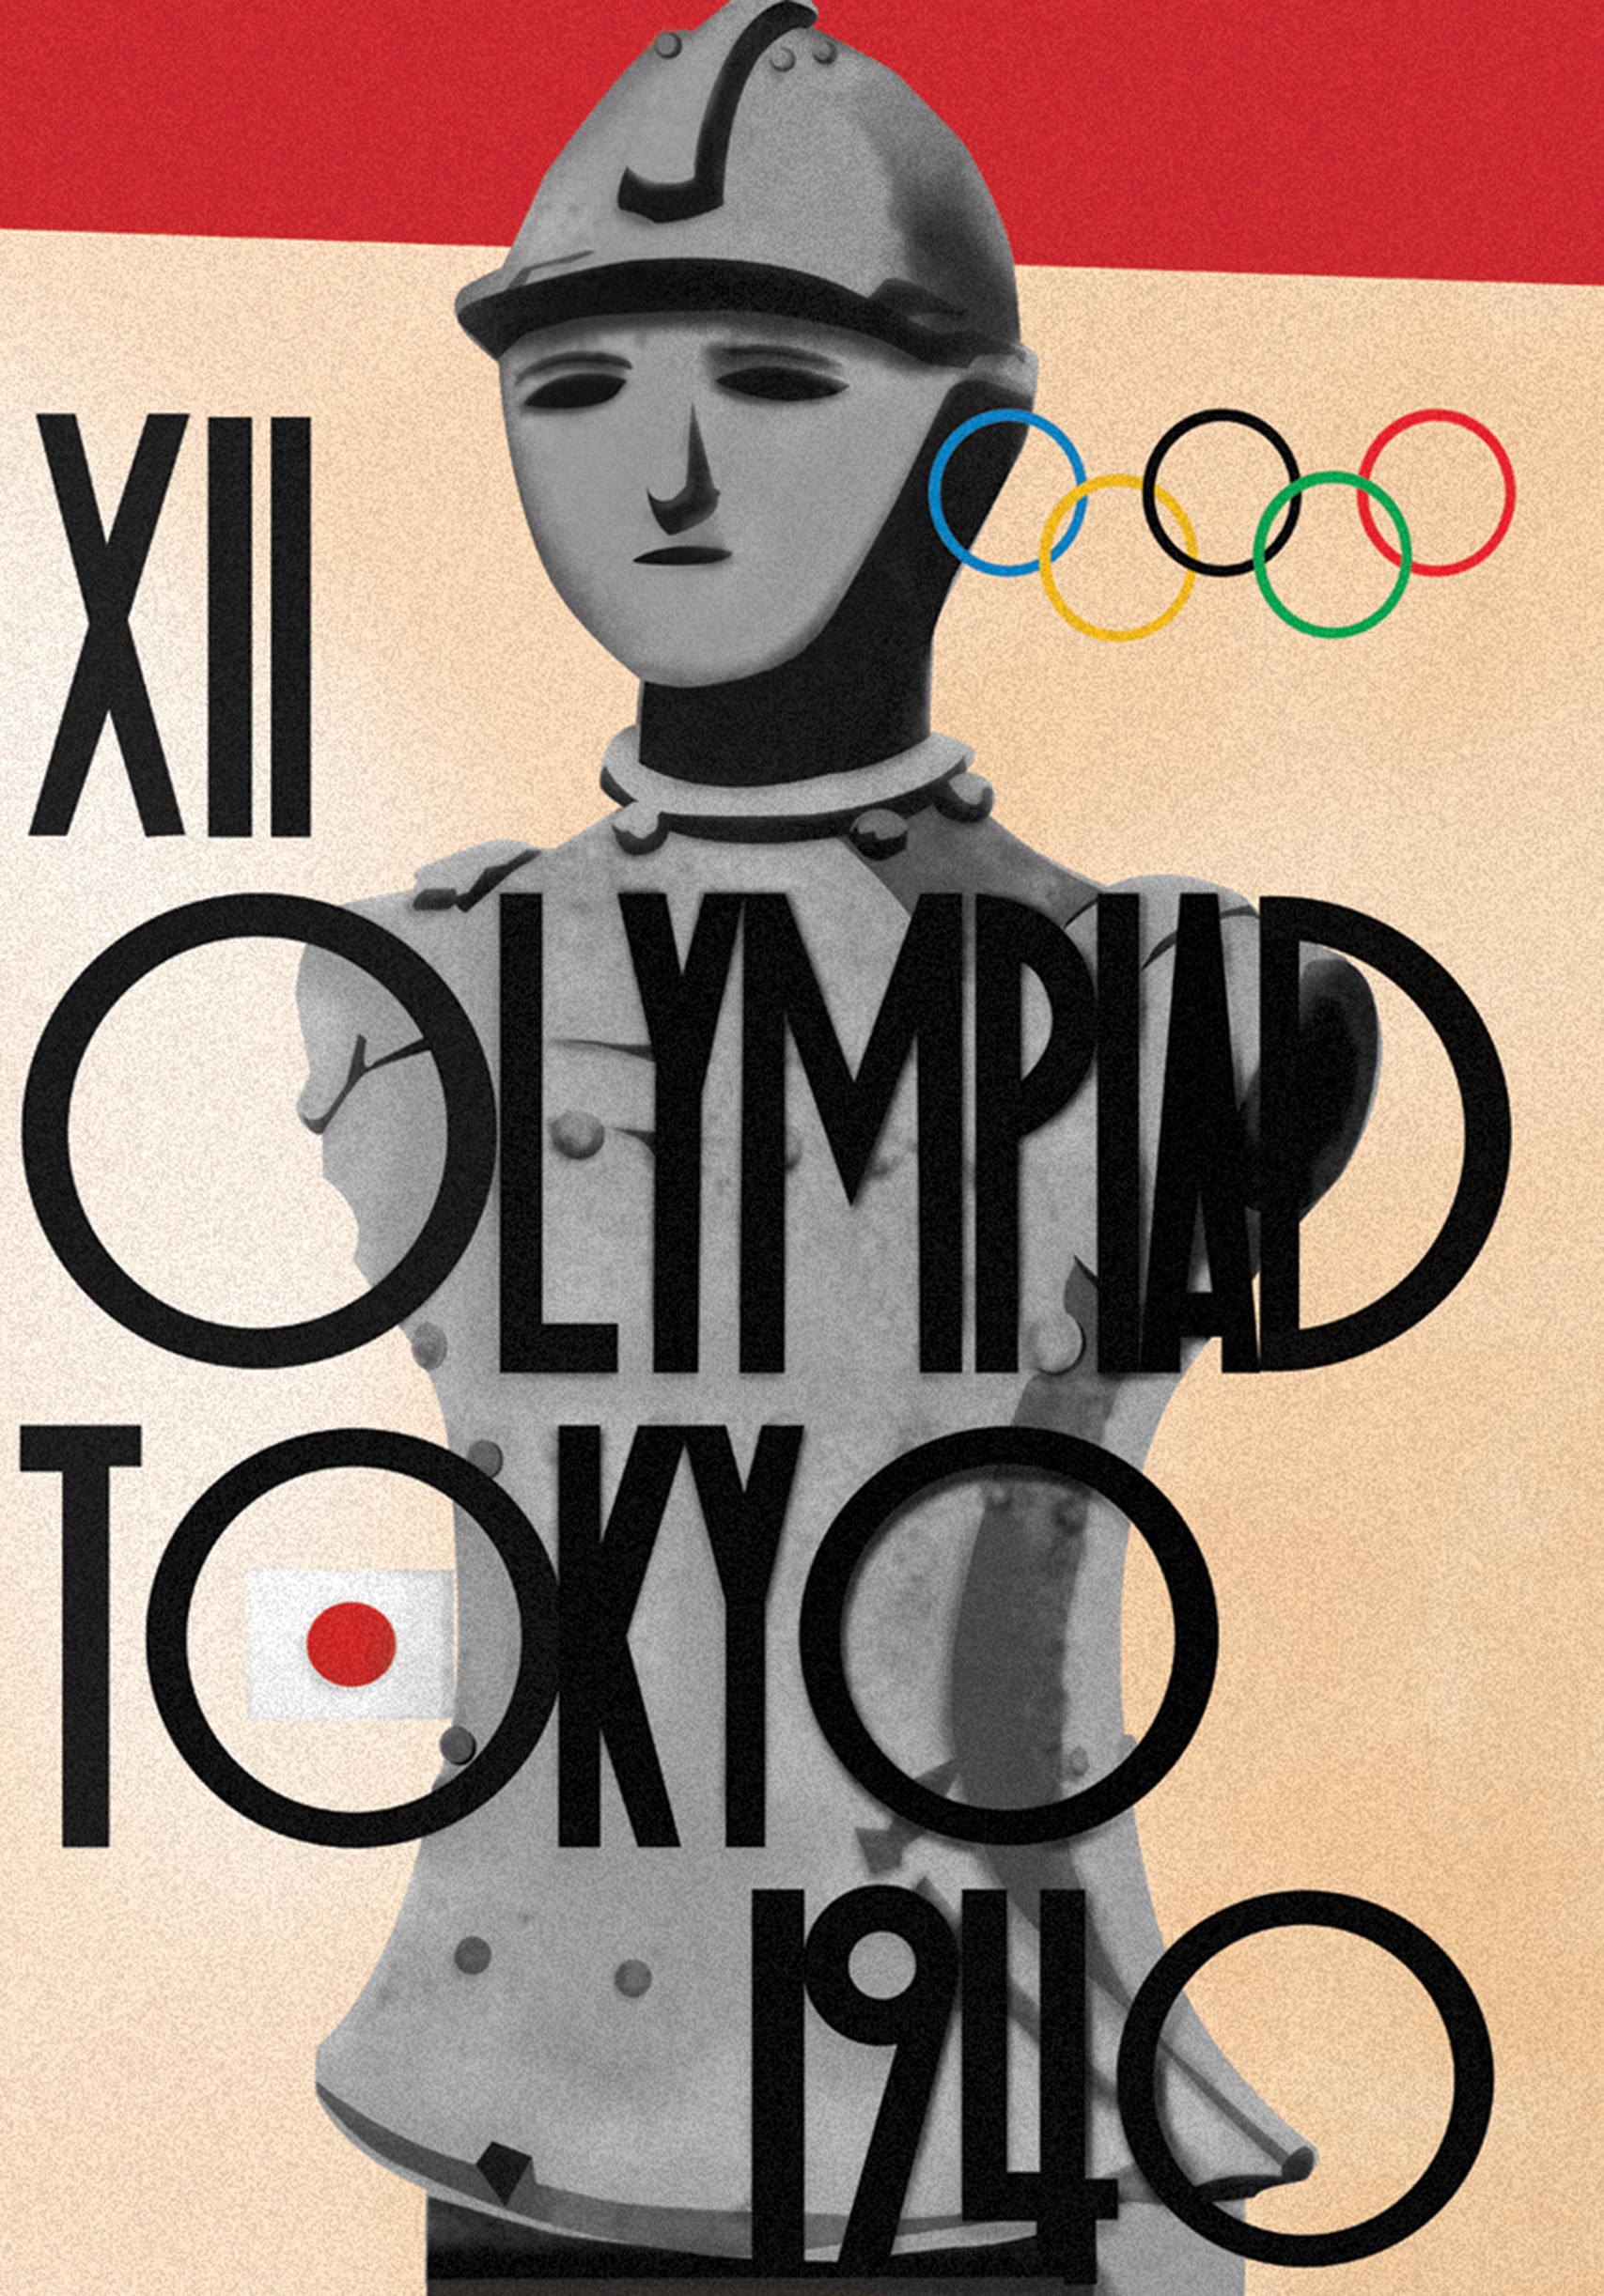 Plakat zaprojektowany z okazji XII Igrzysk Olimpijskich w Tokio